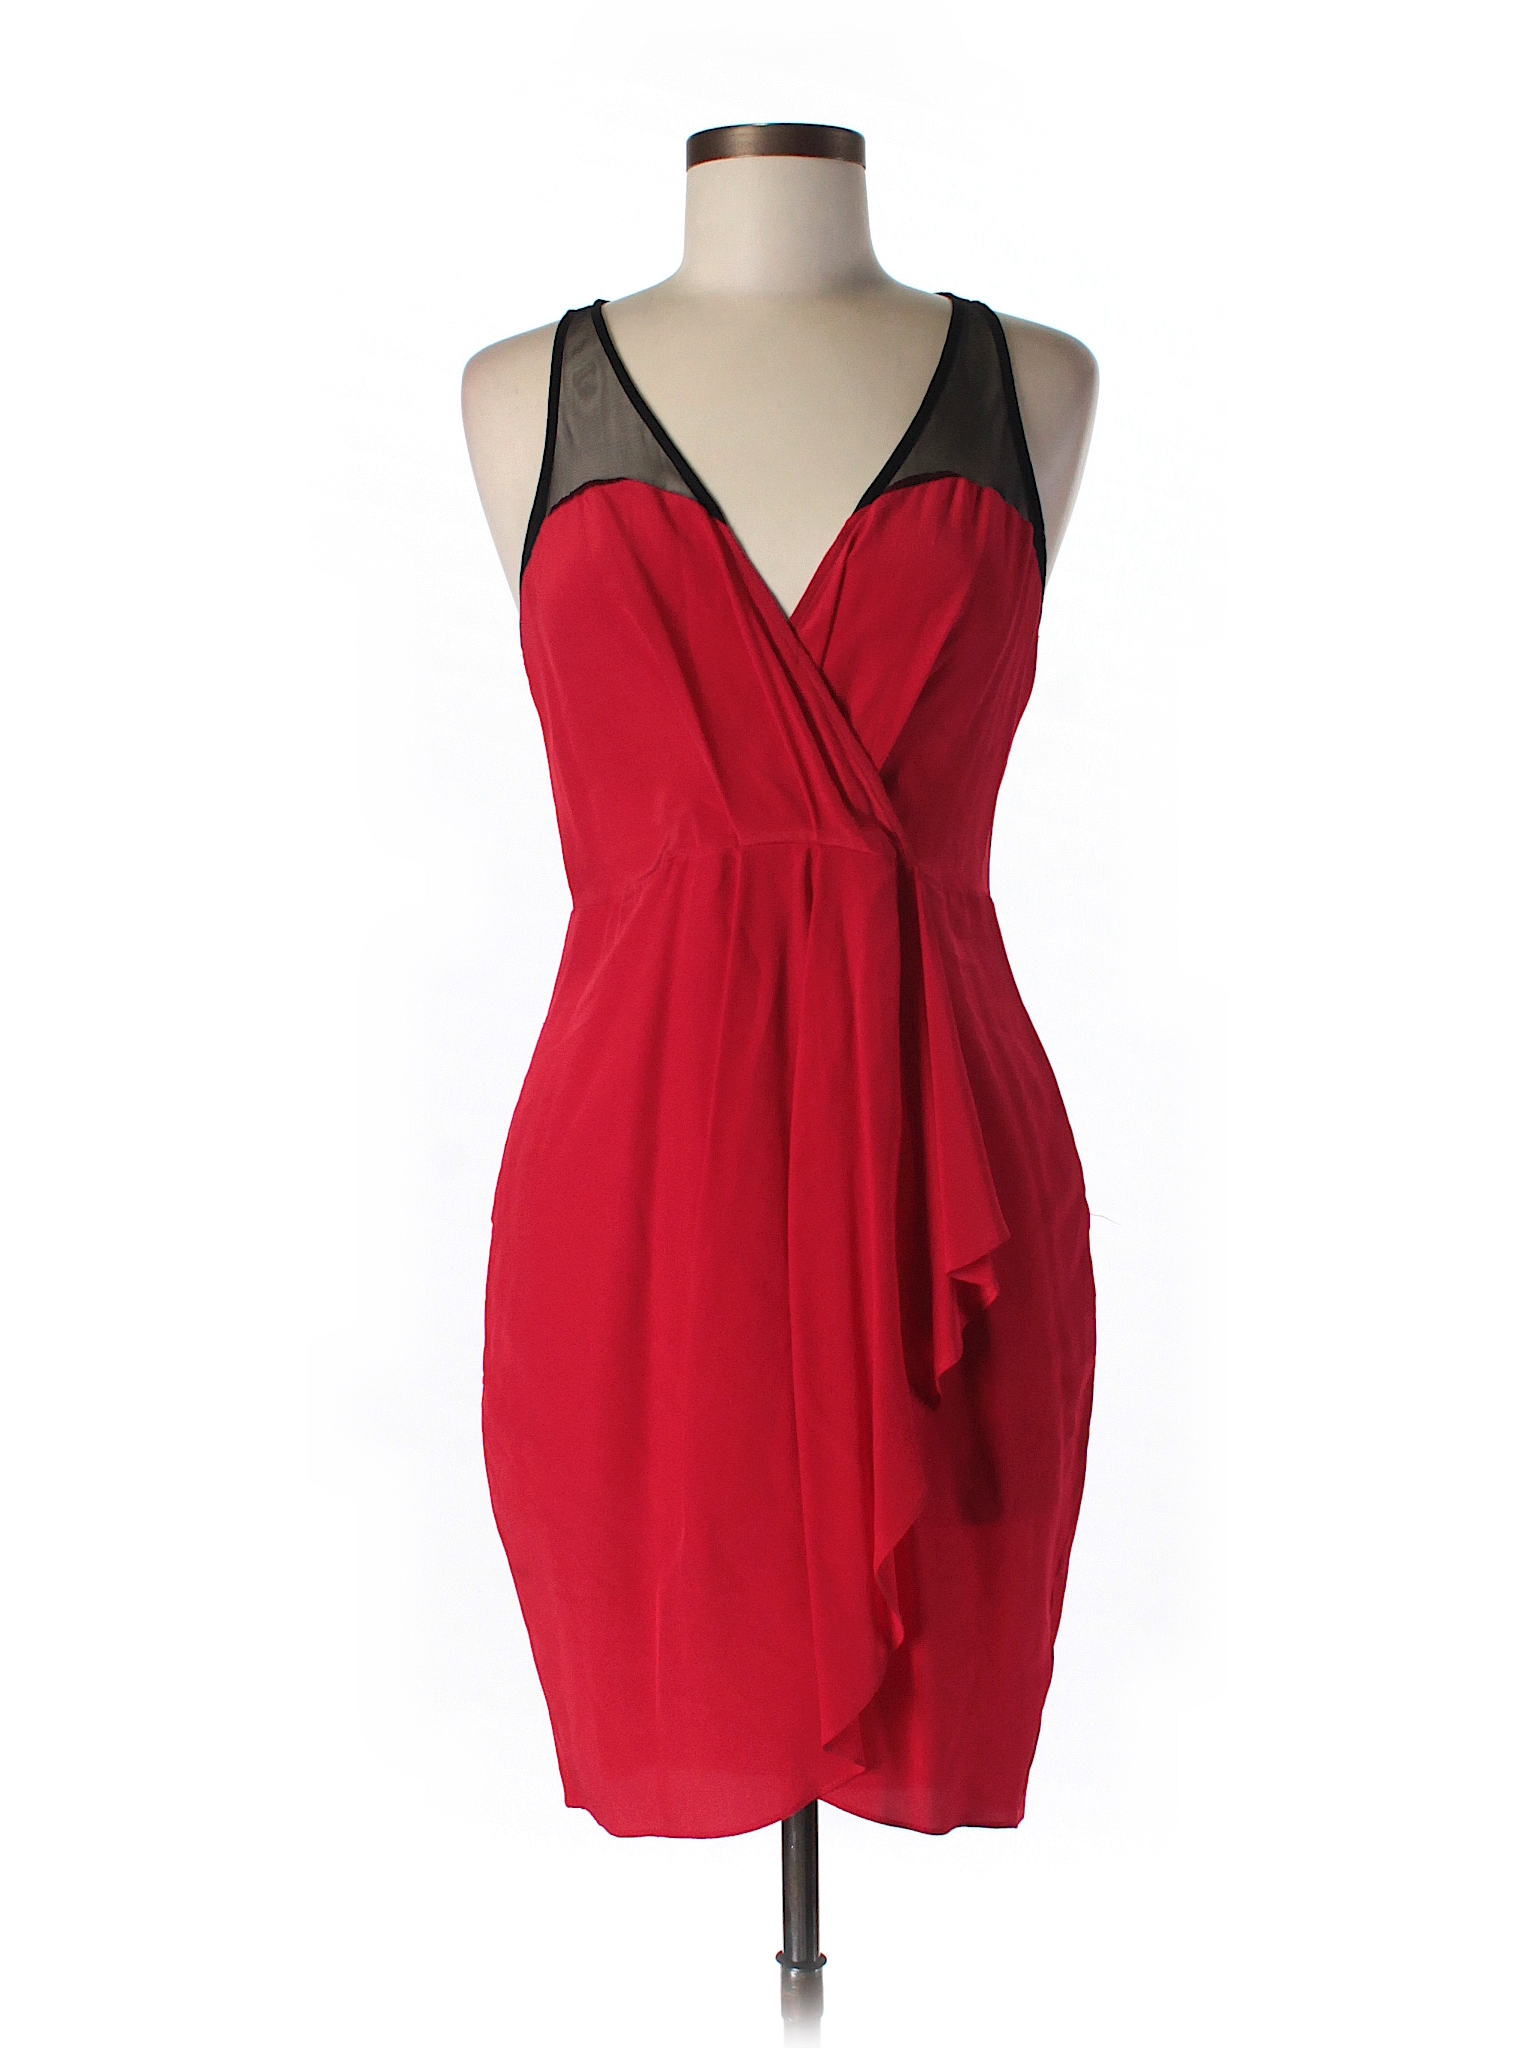 Greylin 100% Silk Solid Red Silk Dress Size M - 78% off | thredUP